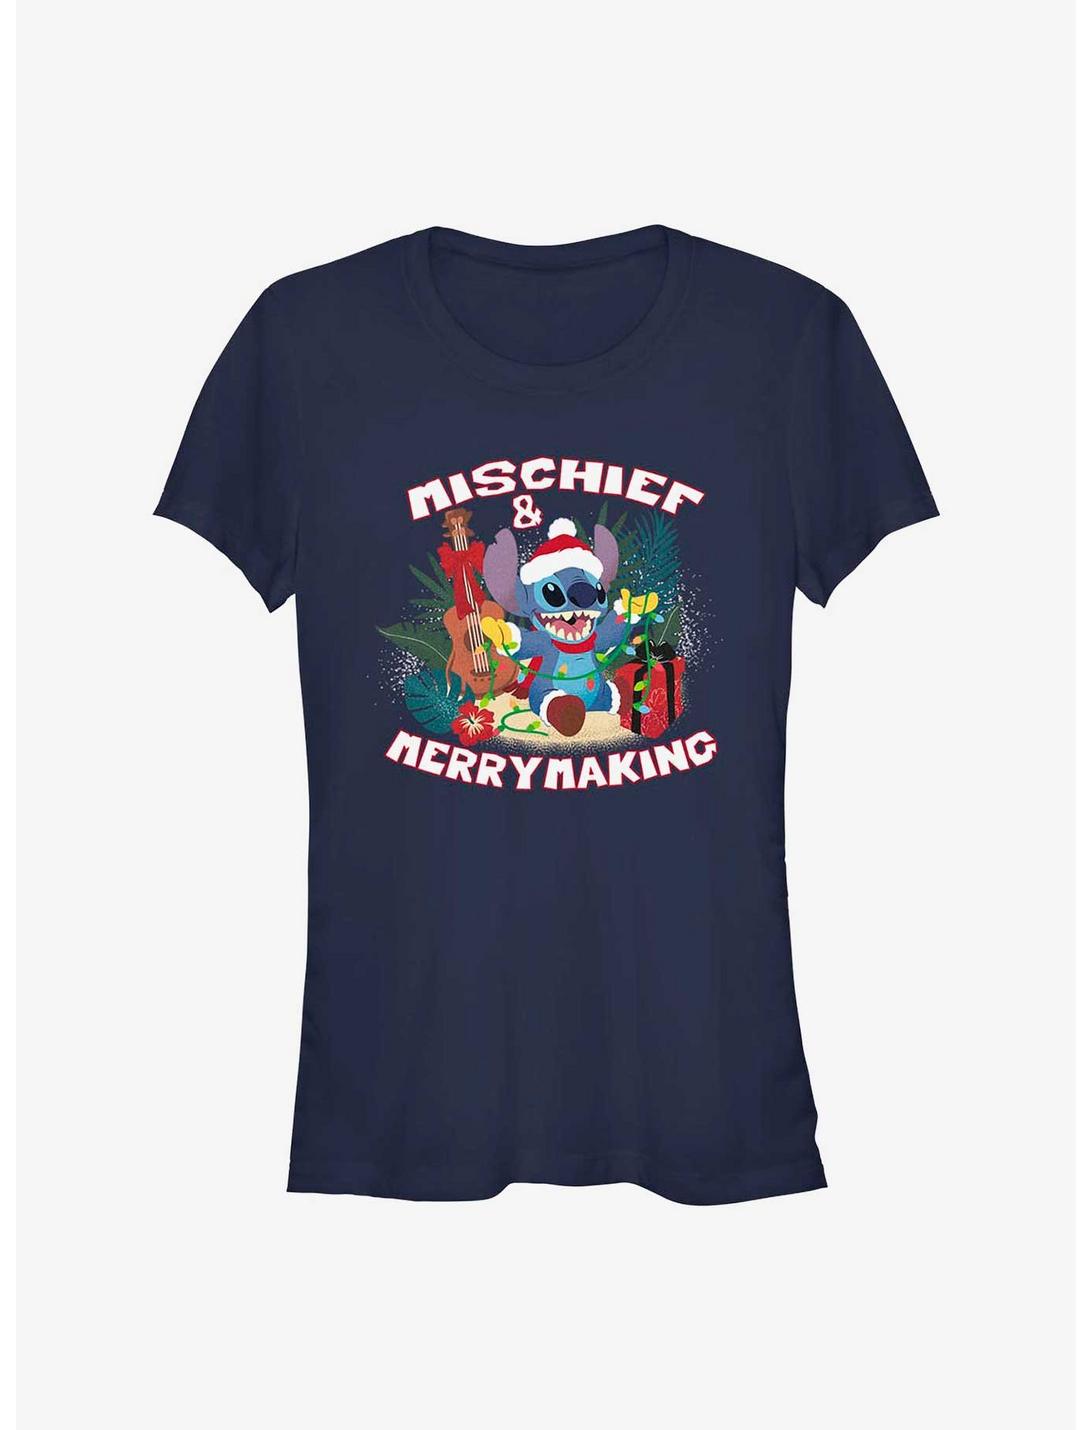 Disney Lilo & Stitch Mischief And Merrymaking Girls T-Shirt, NAVY, hi-res